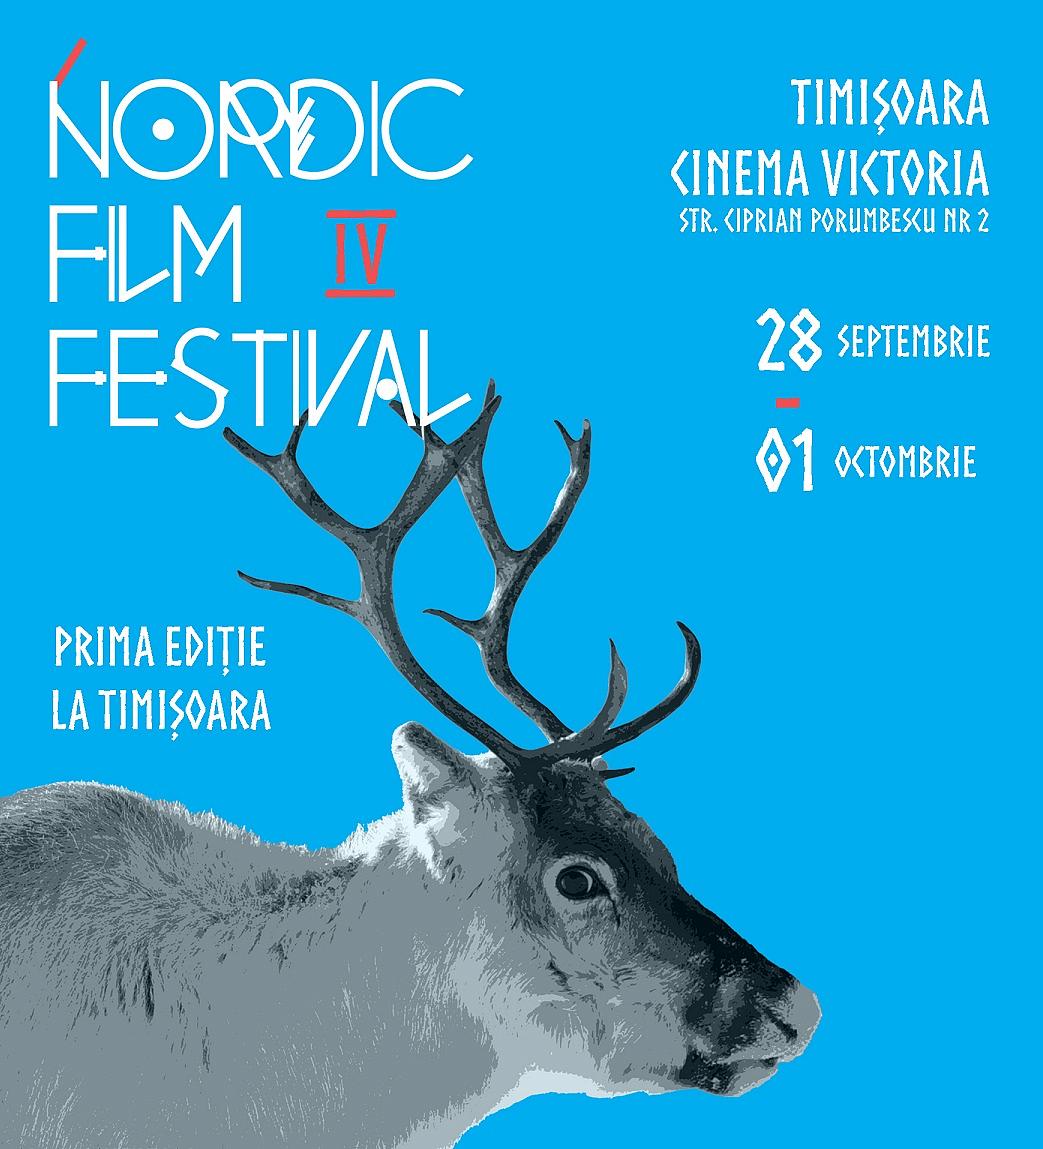 Festivalul de Film Nordic are loc la Timișoara în această toamnă